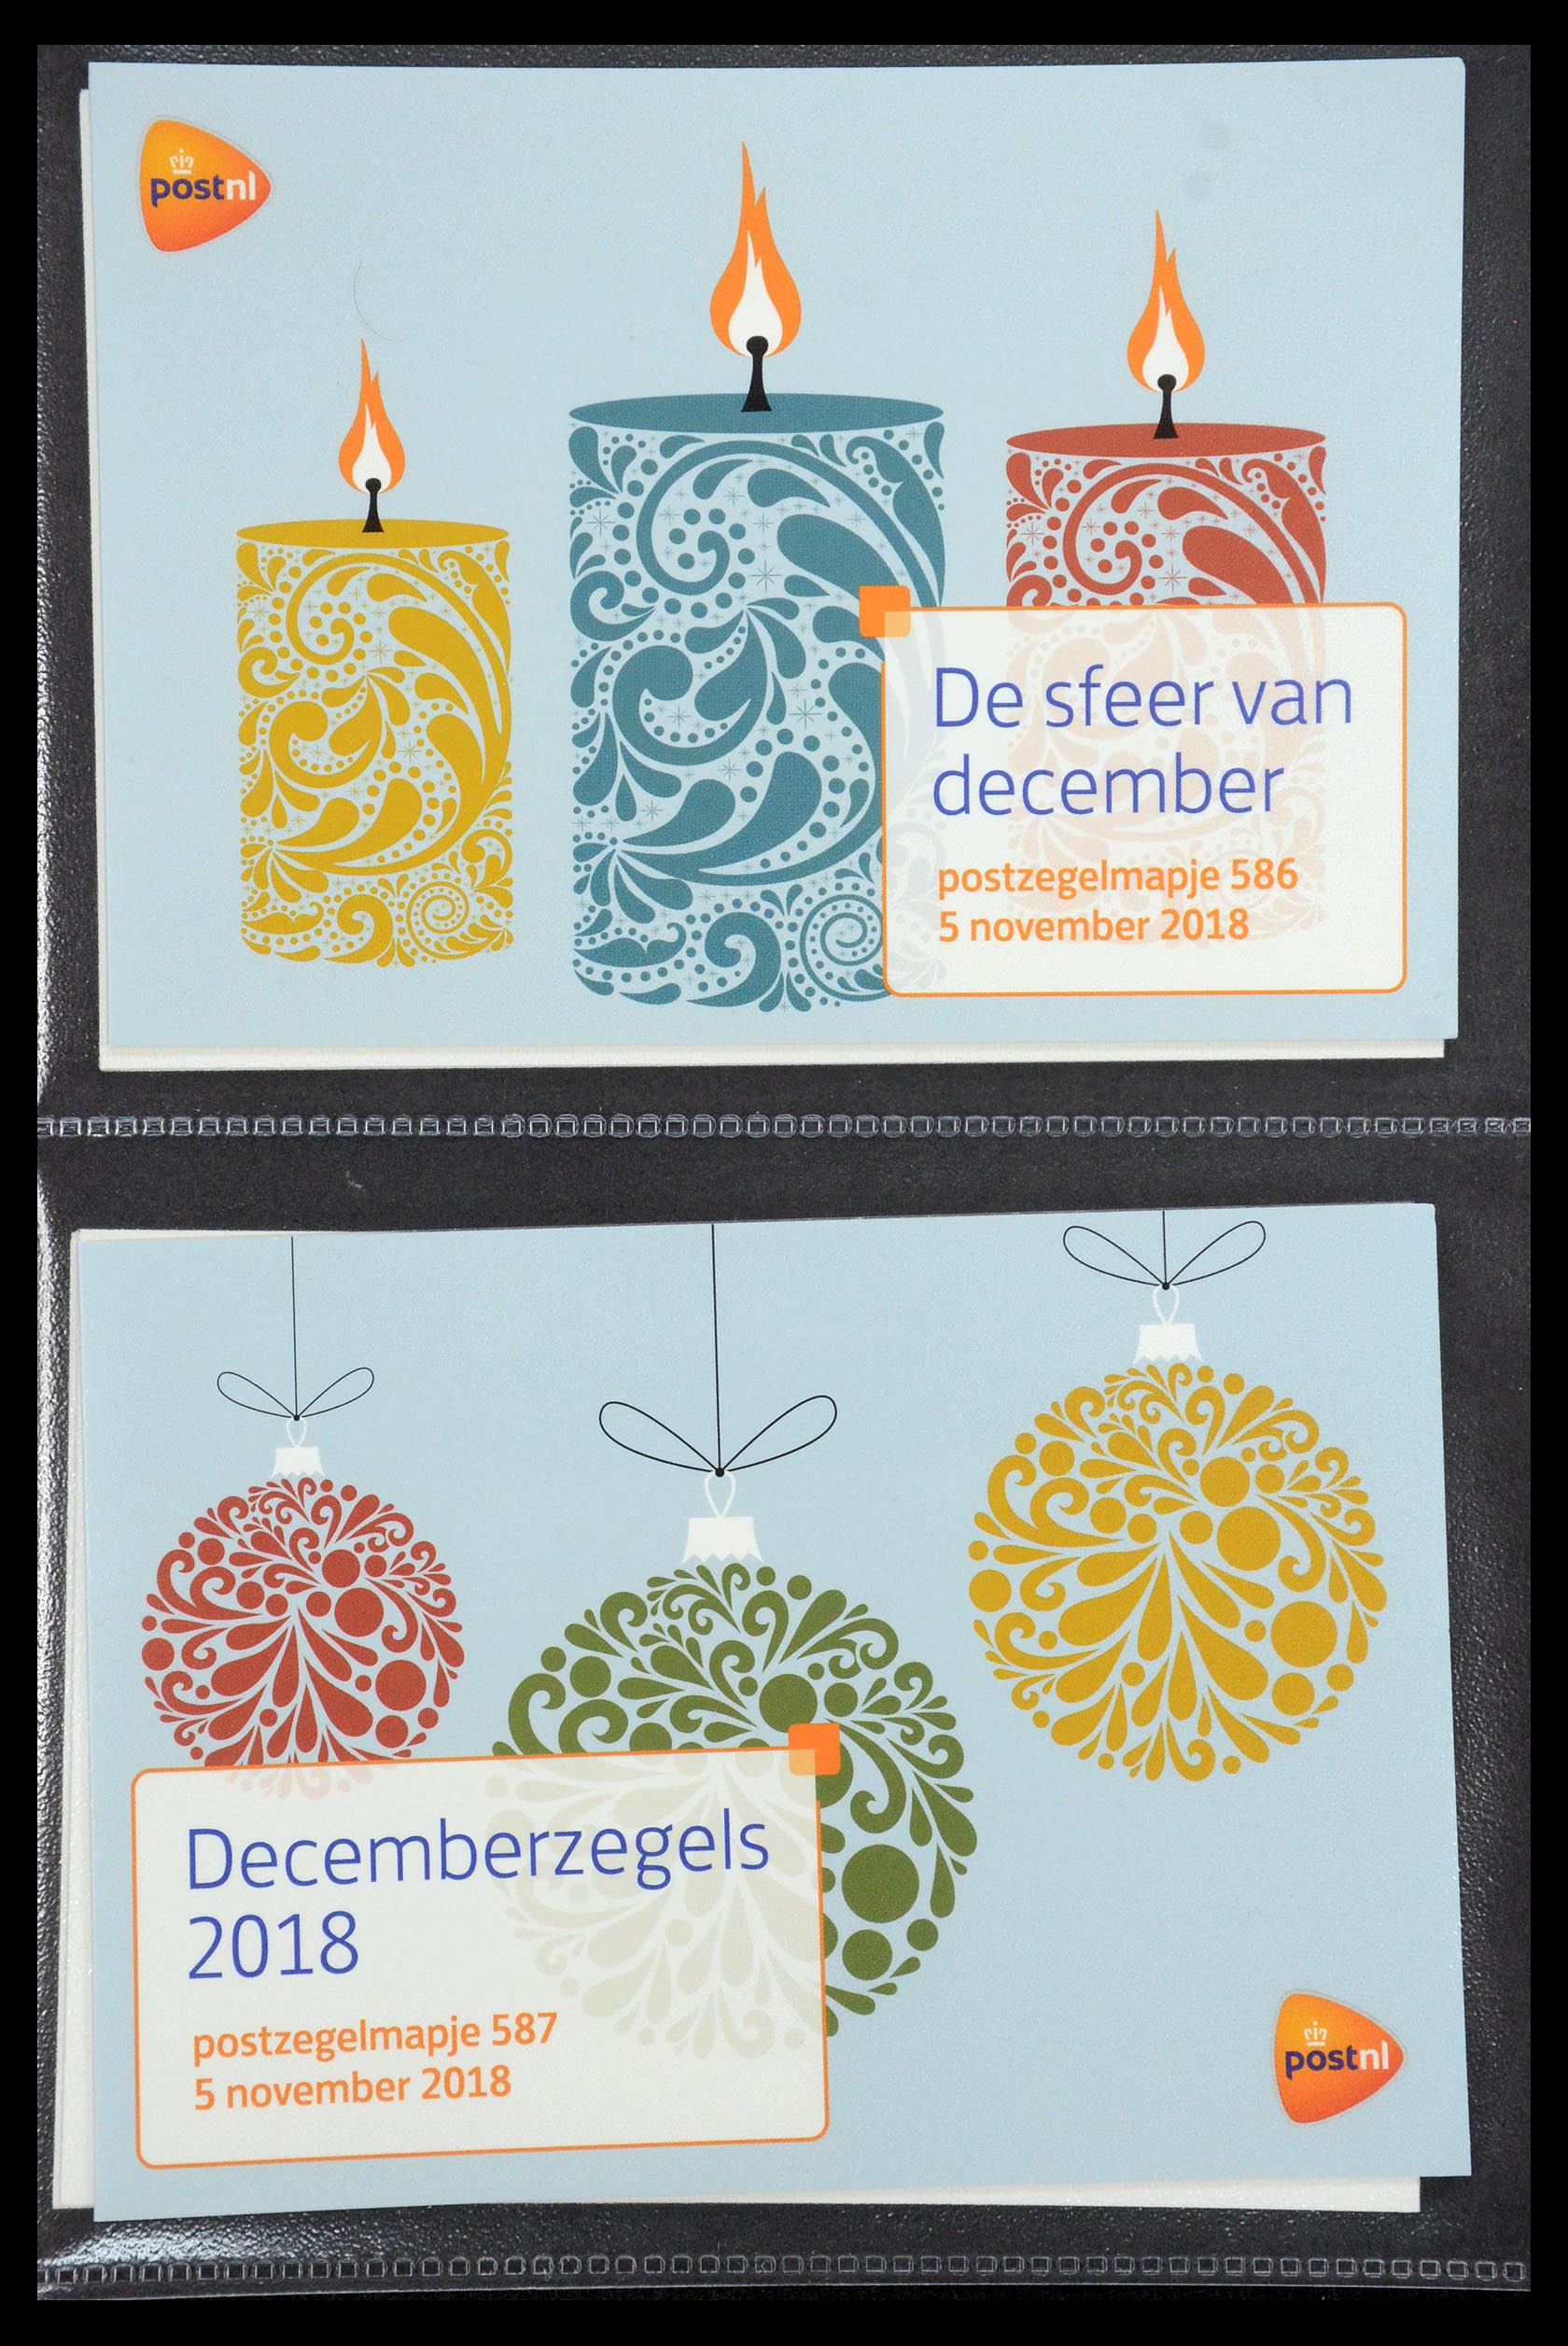 35187 354 - Stamp Collection 35187 Netherlands PTT presentation packs 1982-2019!